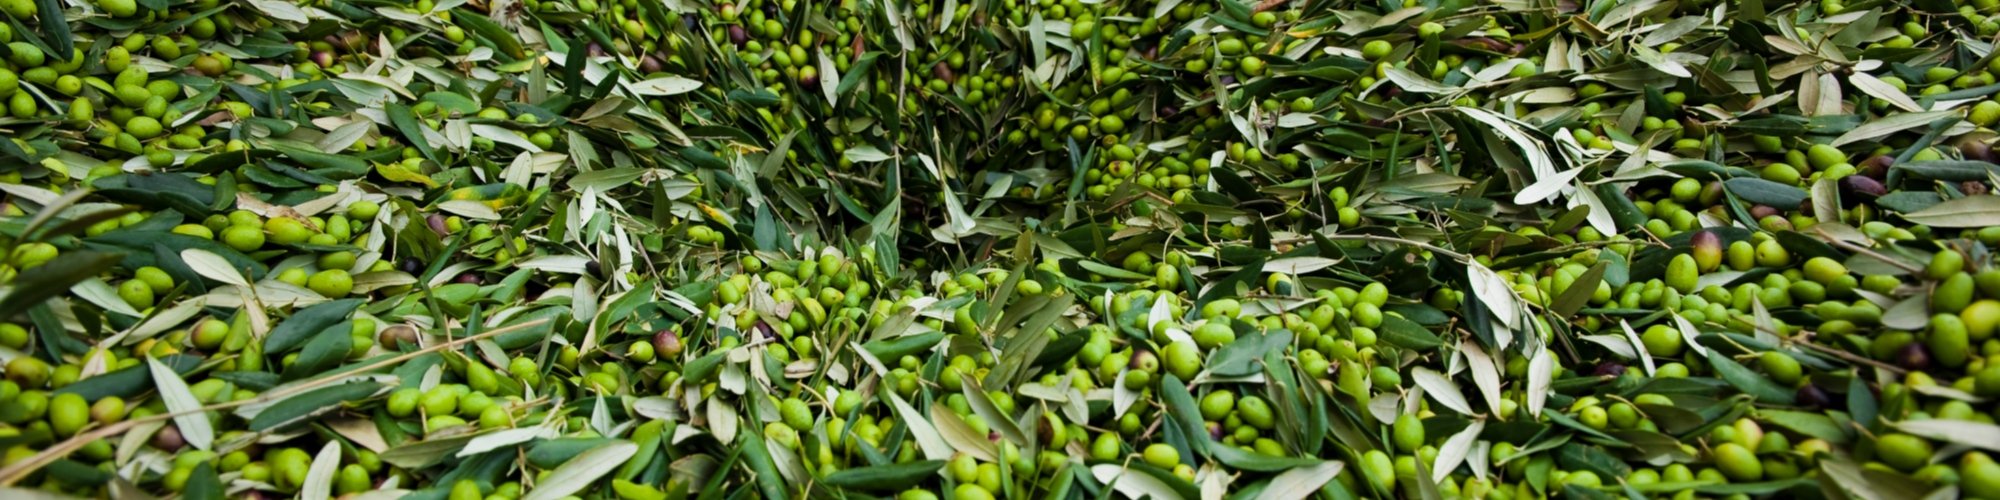 Oliven, aus denen toskanisches IGP-Öl hergestellt wird